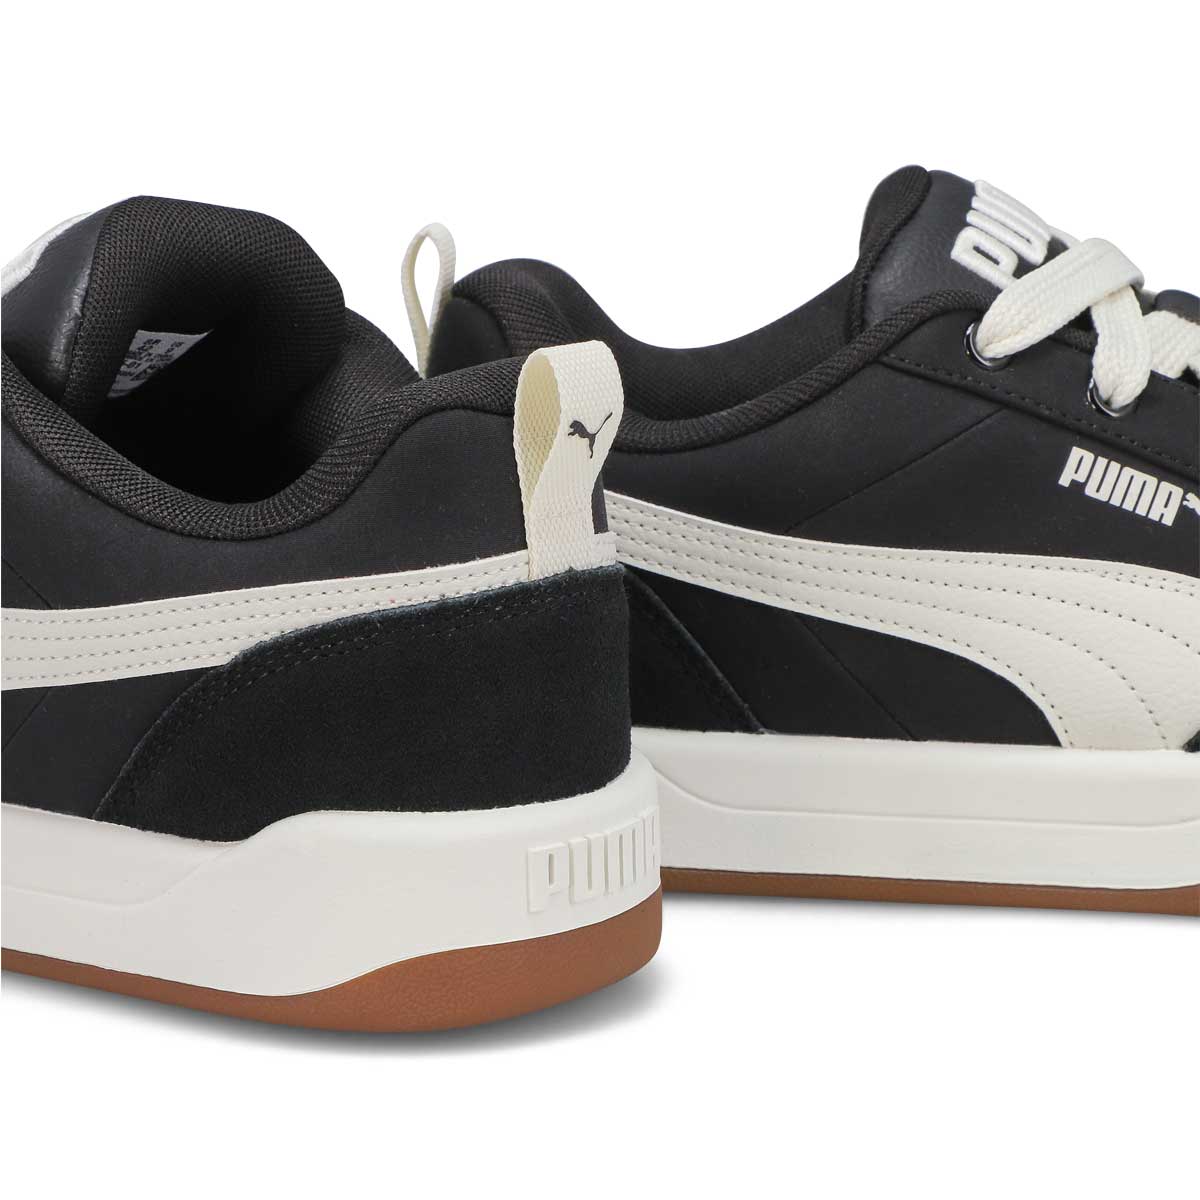 Men's Park Lifestyle Street Lace Up Sneaker - Black/Vapor Gray